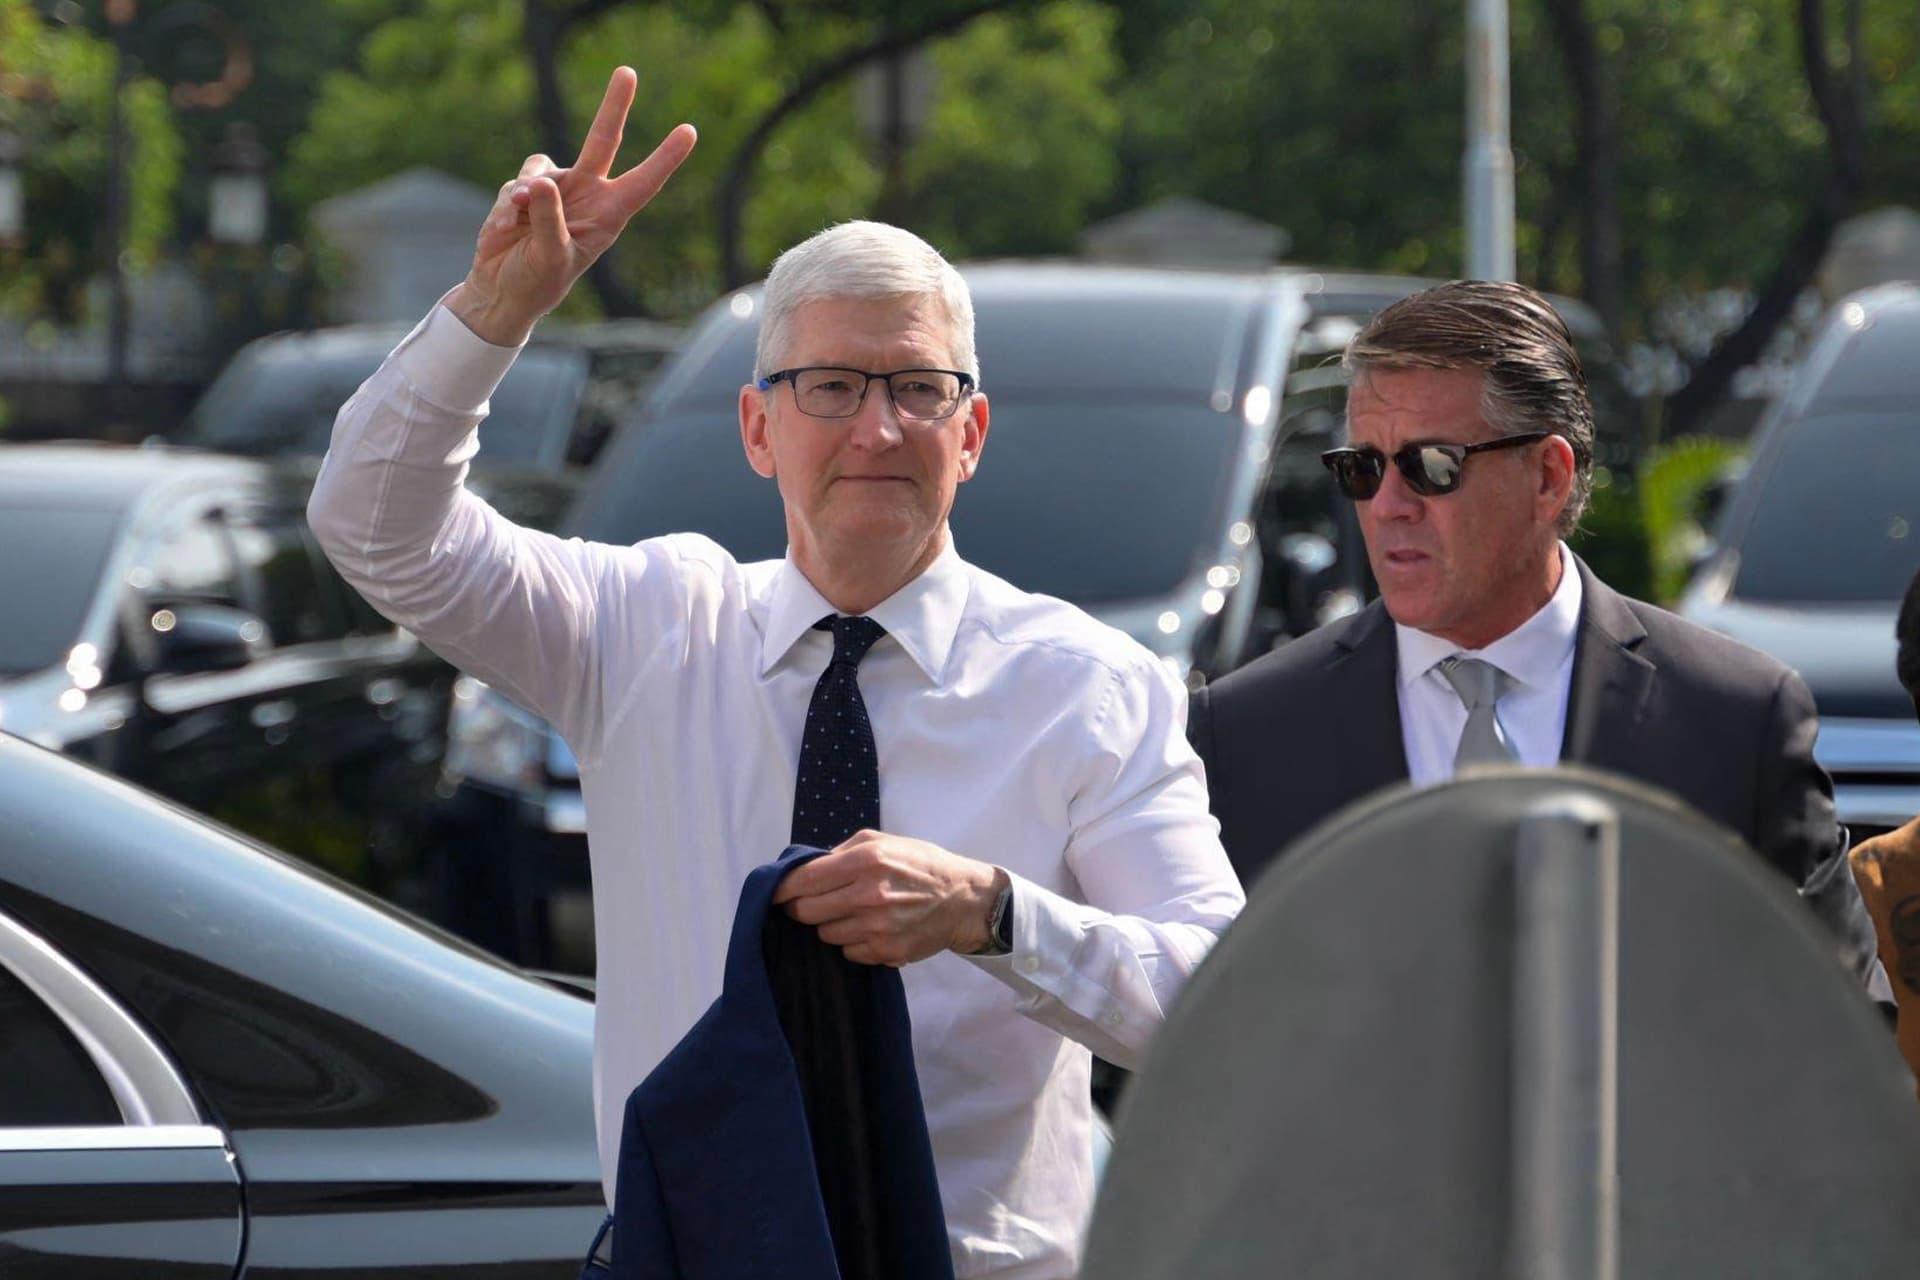 مرجع متخصصين ايران تيم كوك / Tim Cook مديرعامل اپل Apple در حال نشان دادن علامت پيروزي